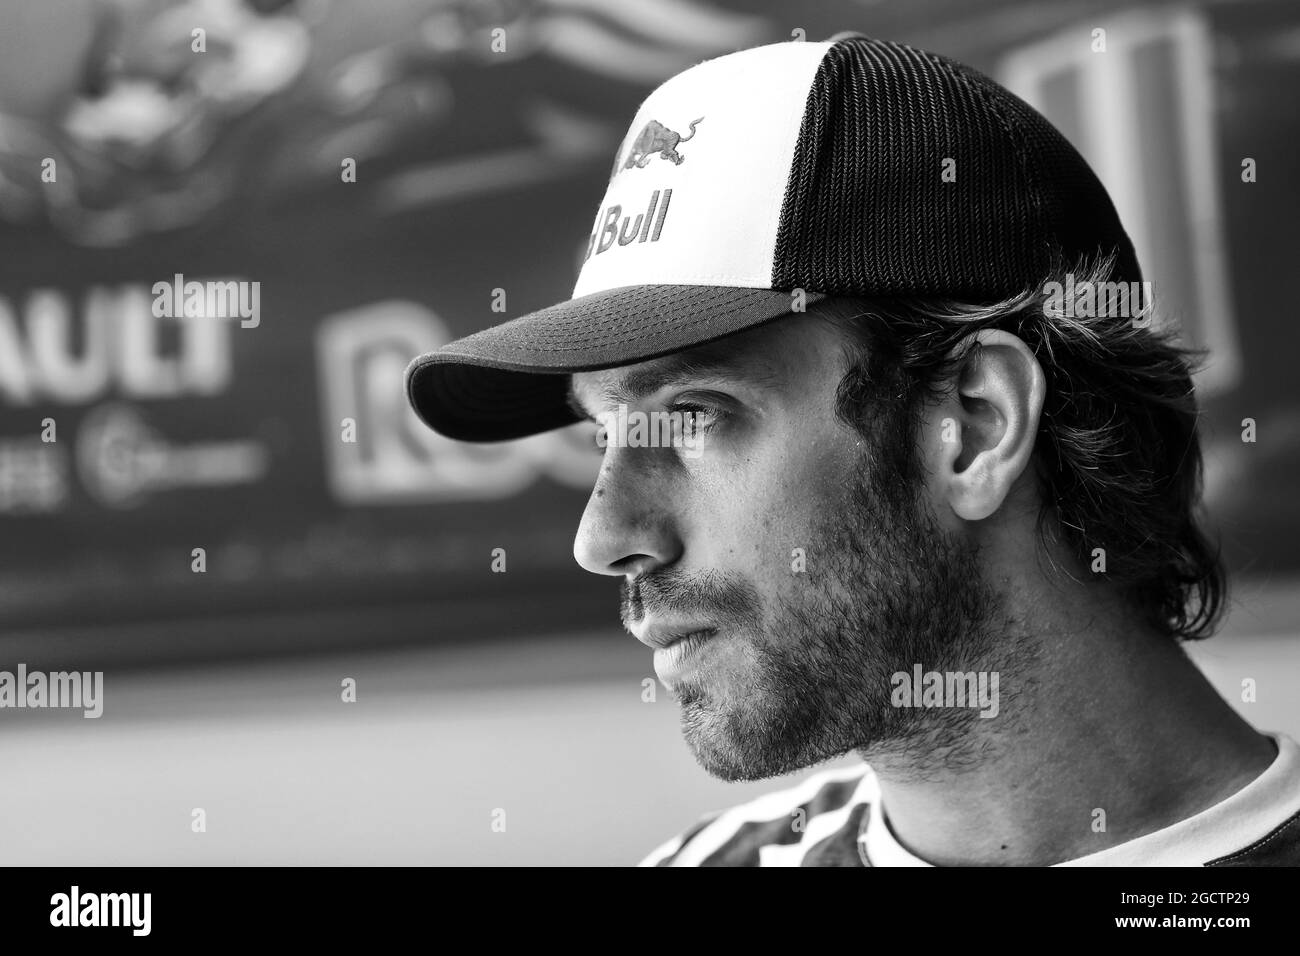 Jean-Eric Vergne (FRA) Scuderia Toro Rosso. Grand Prix d'Allemagne, jeudi 17 juillet 2014. Hockenheim, Allemagne. Banque D'Images